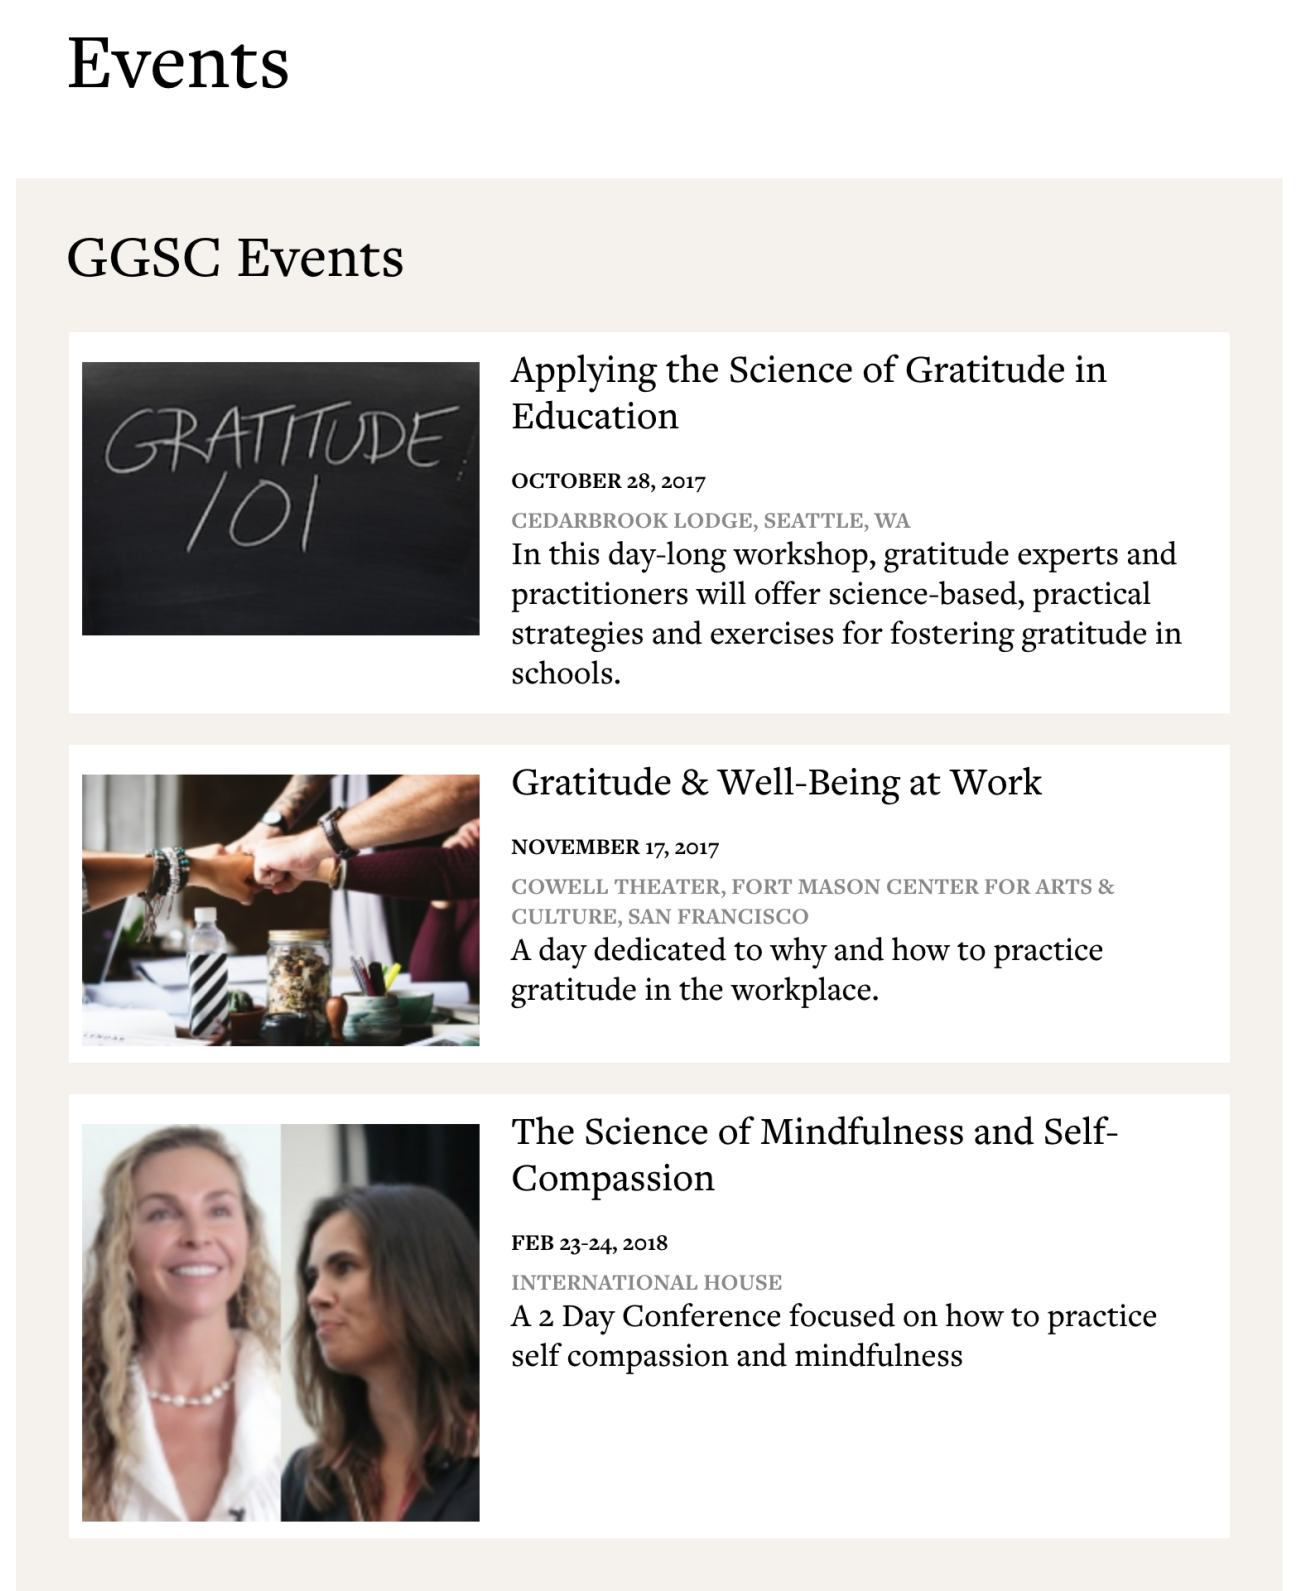 GGSC Events screenshot